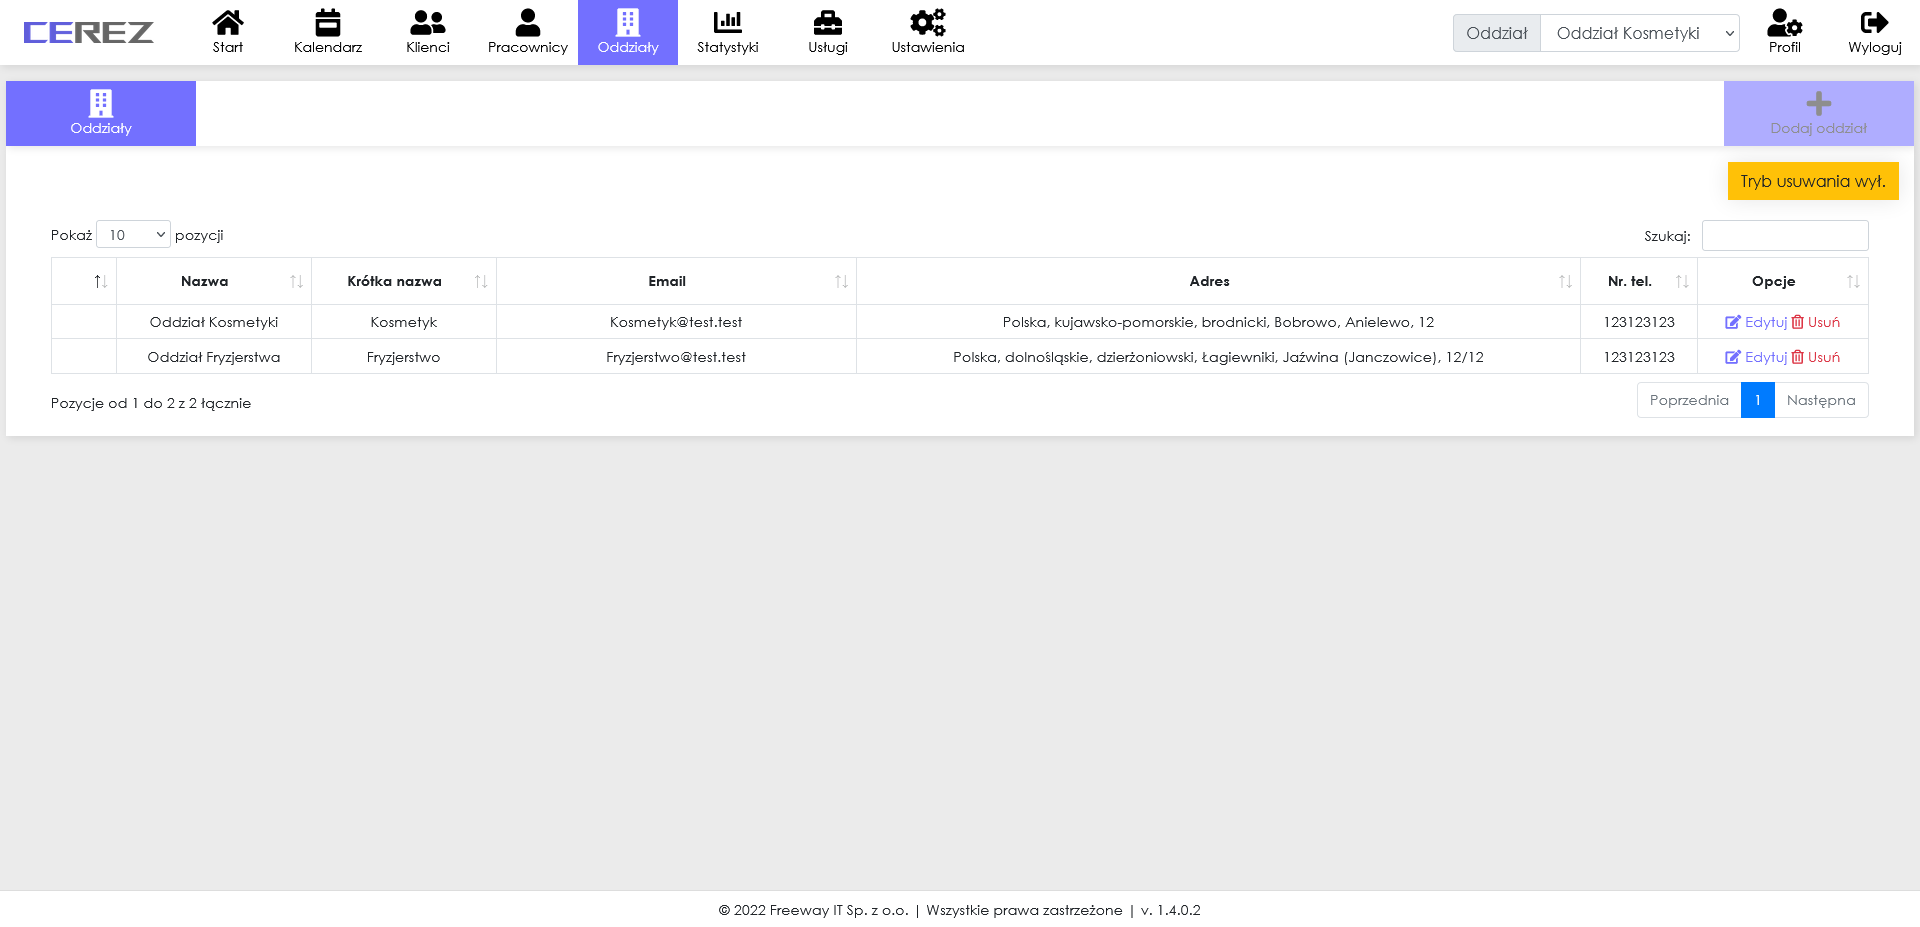 zrzut ekranu widoku oddziałów z aplikacji Cerez